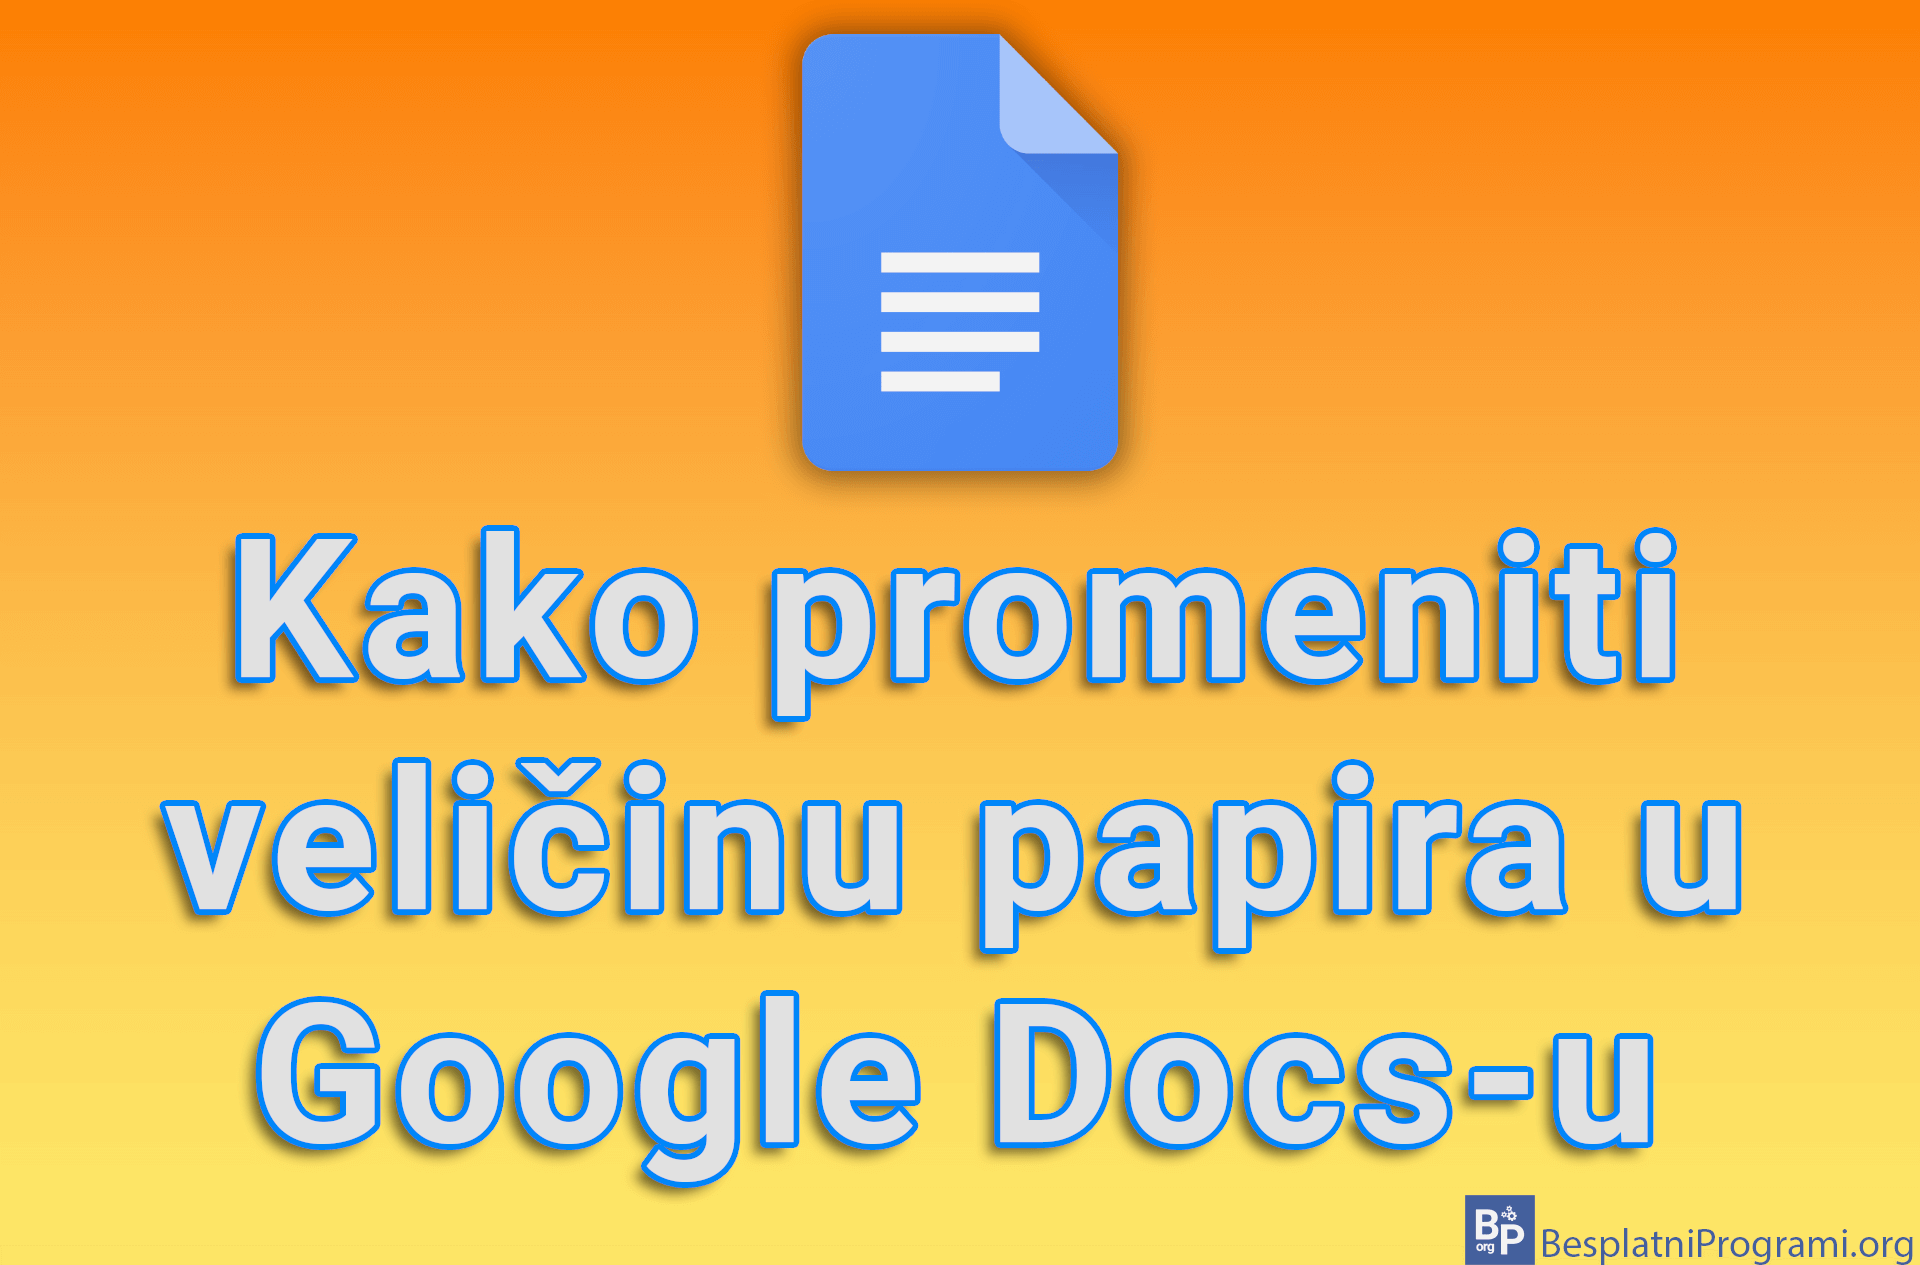 Kako promeniti veličinu papira u Google Docs-u